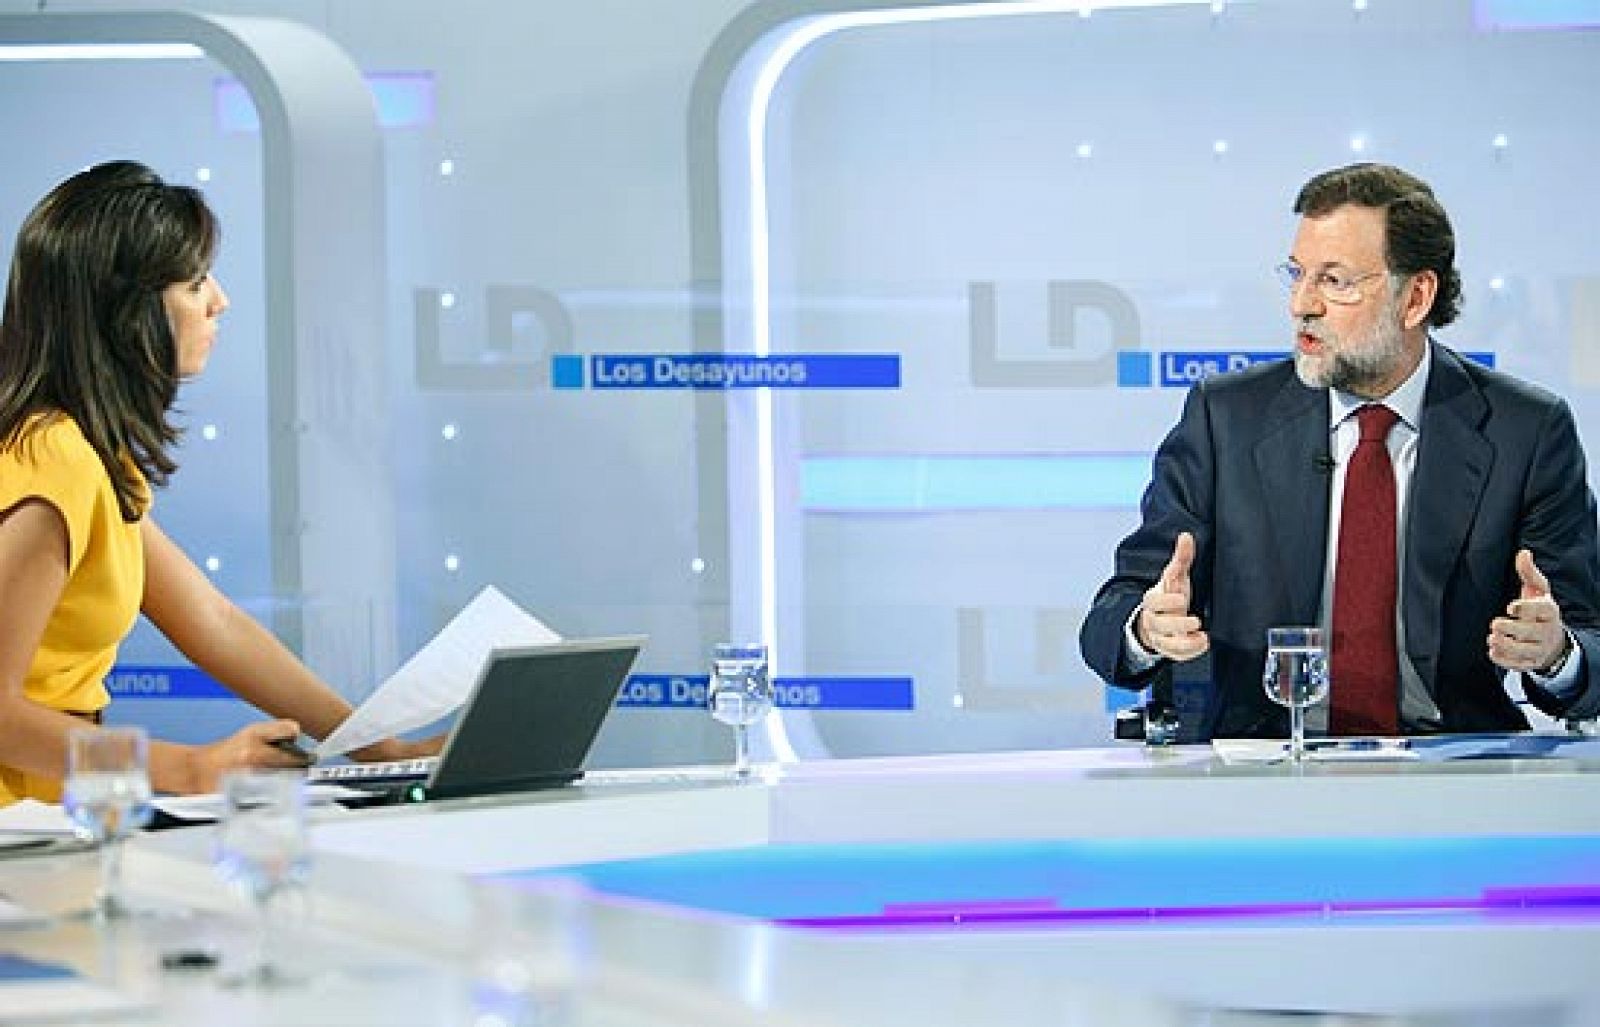 Desayunos - Entrevista íntegra de Rajoy